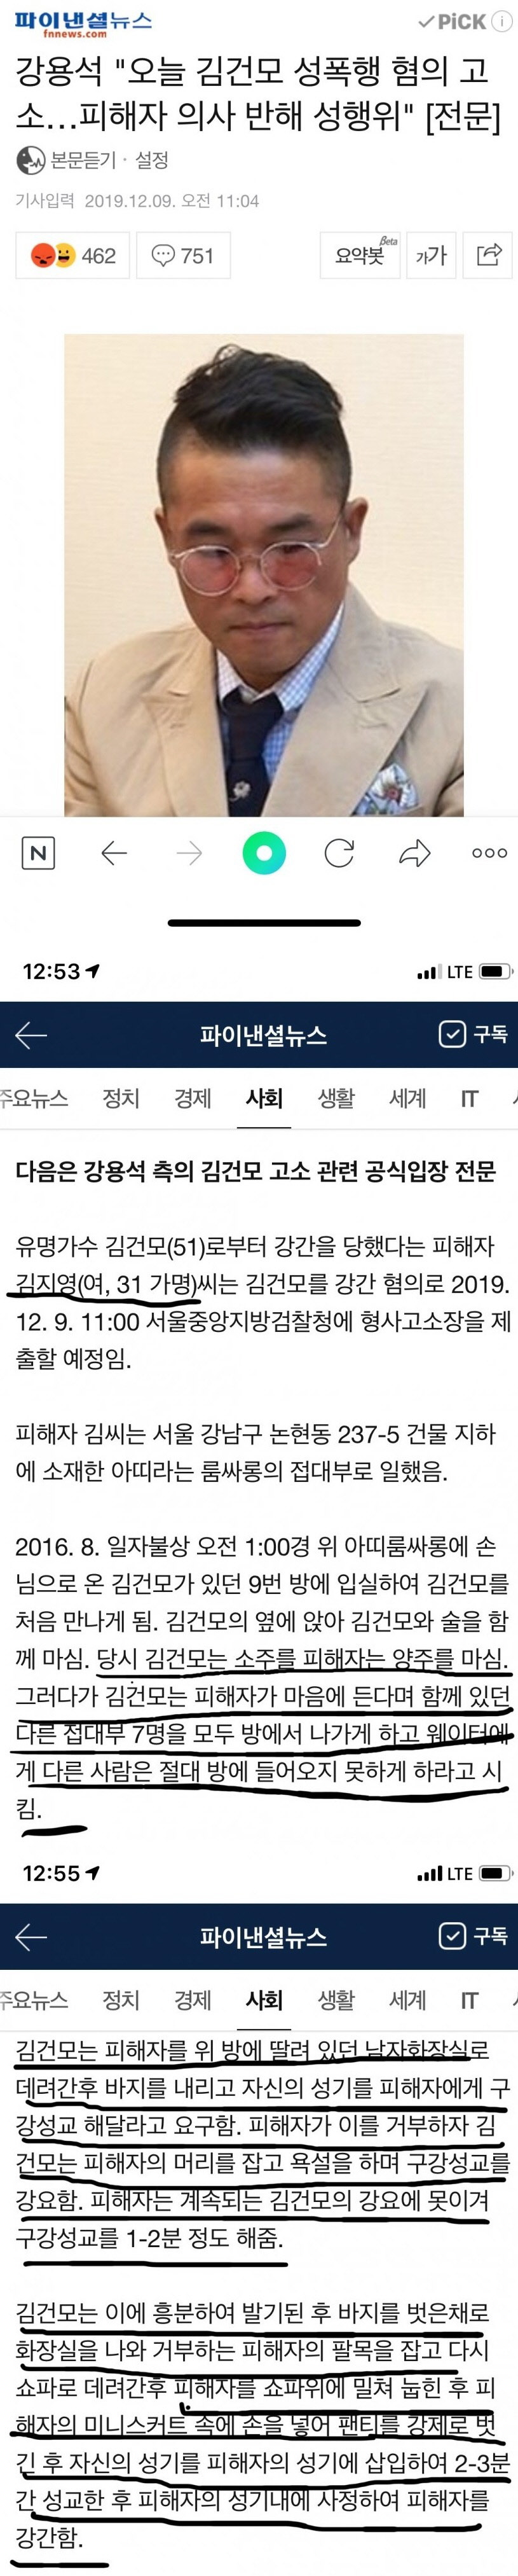 김건모 관련 기사 수위